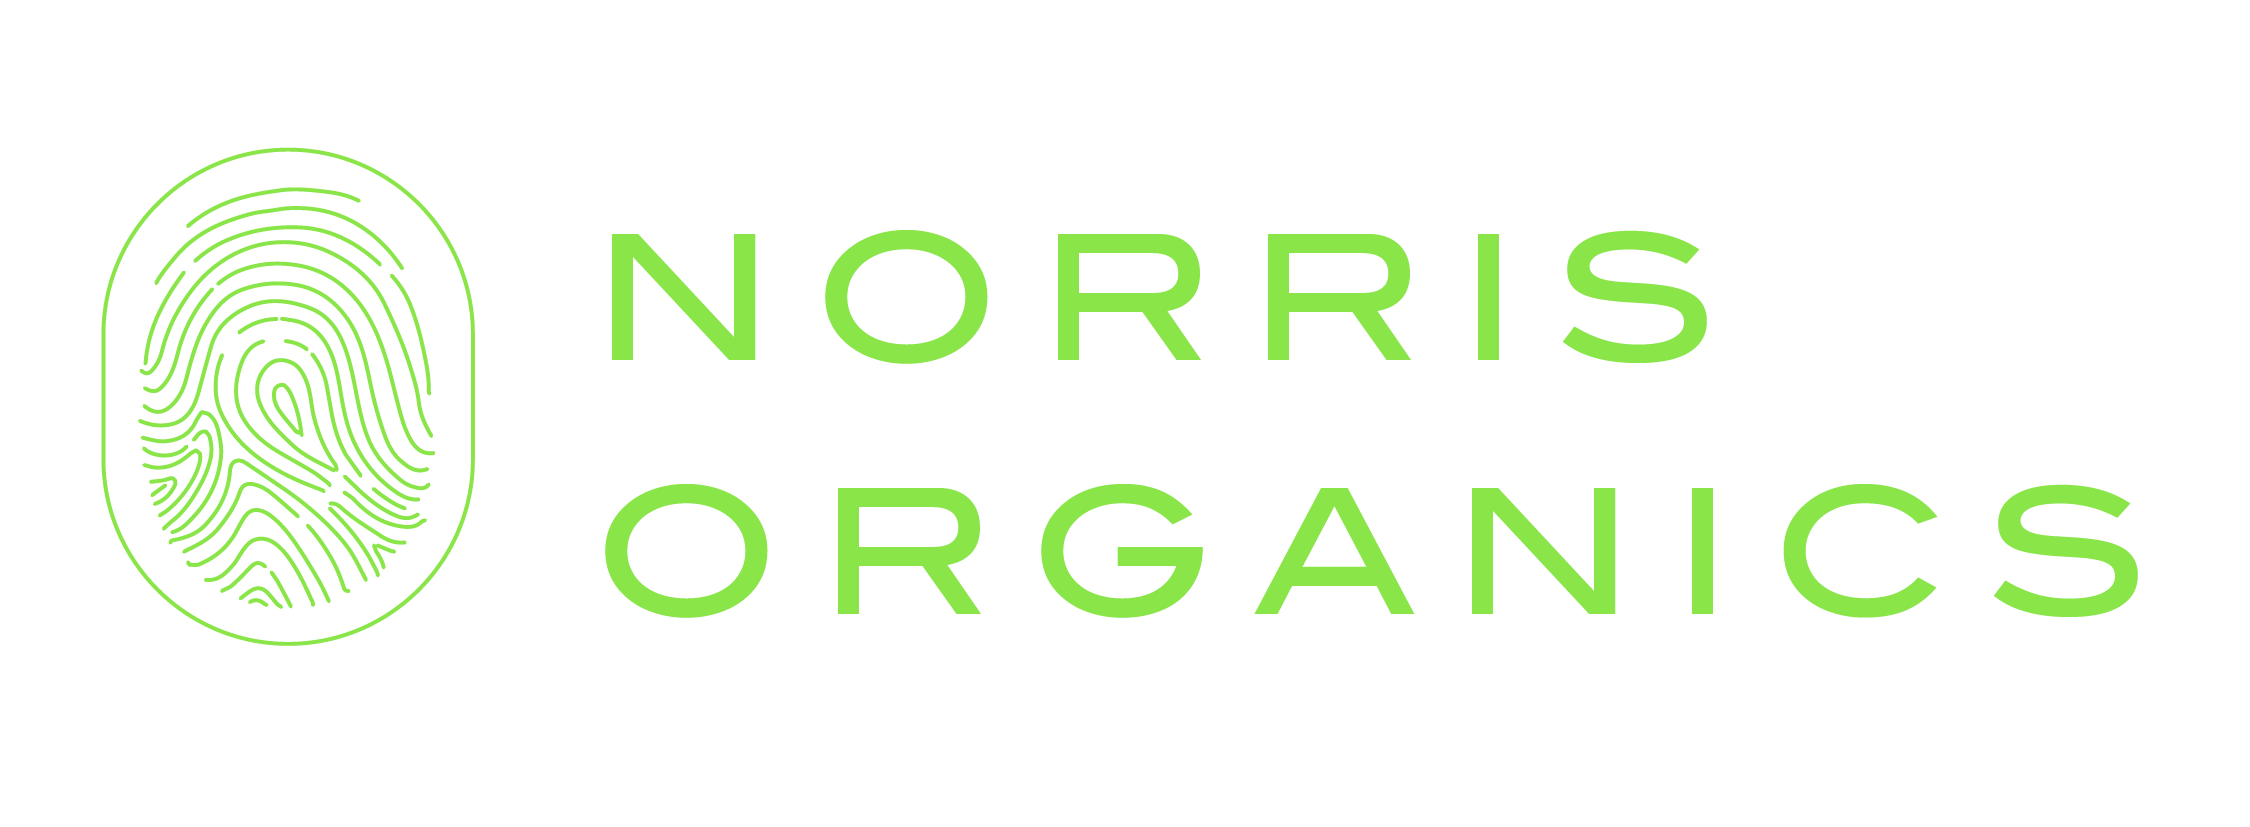 Norris Organics 